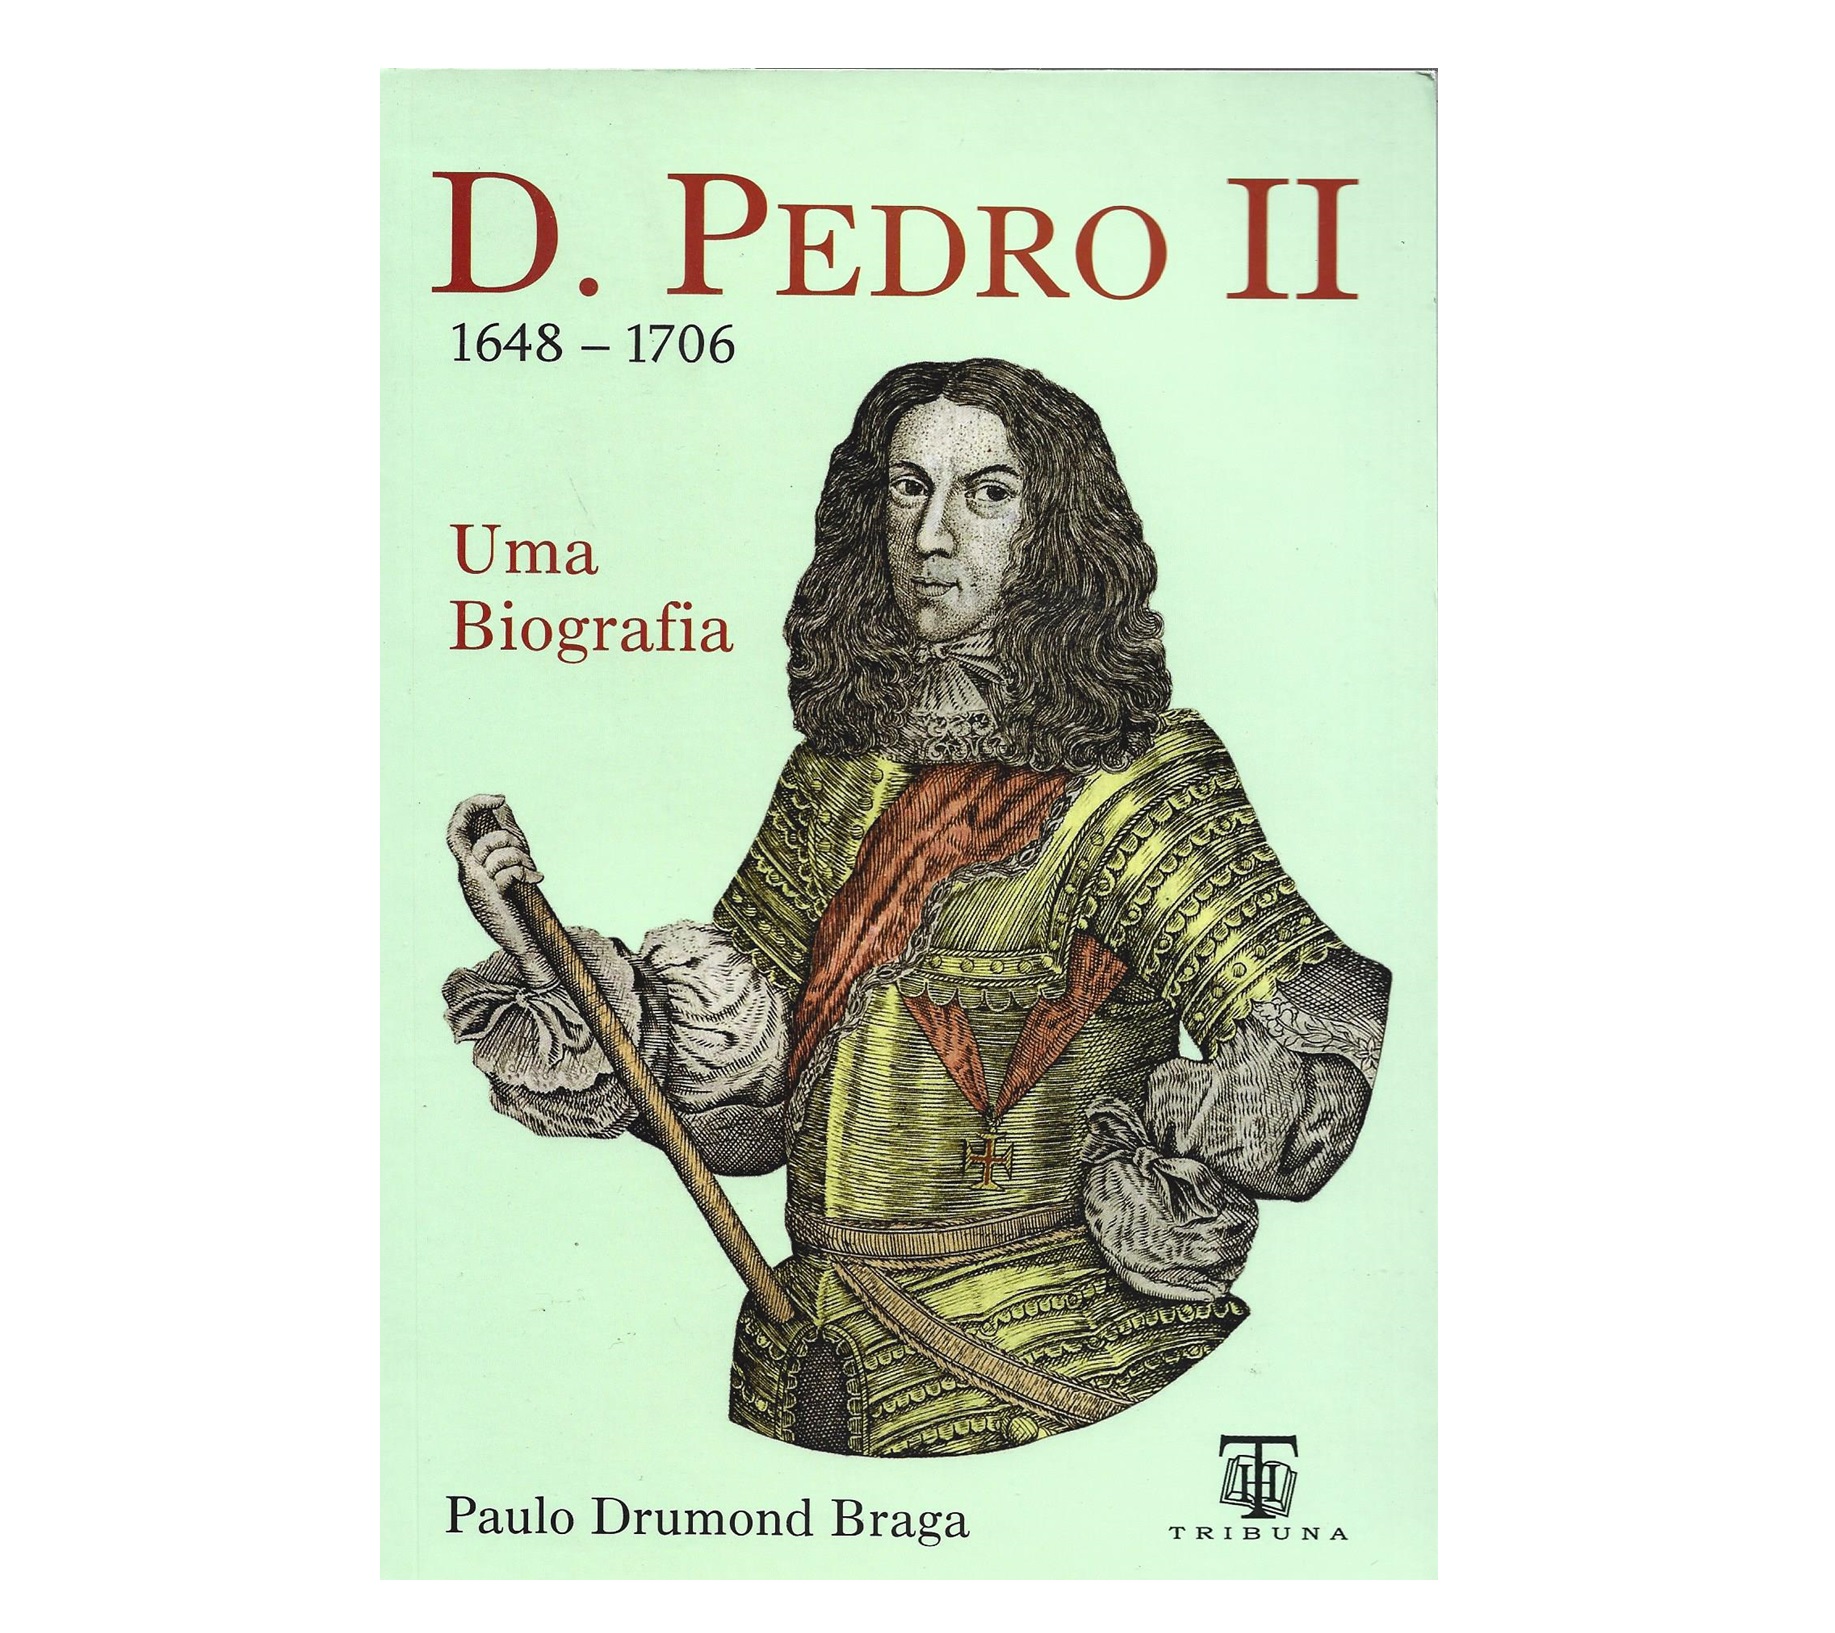 D. PEDRO II. (1648-1706). UMA BIOGRAFIA